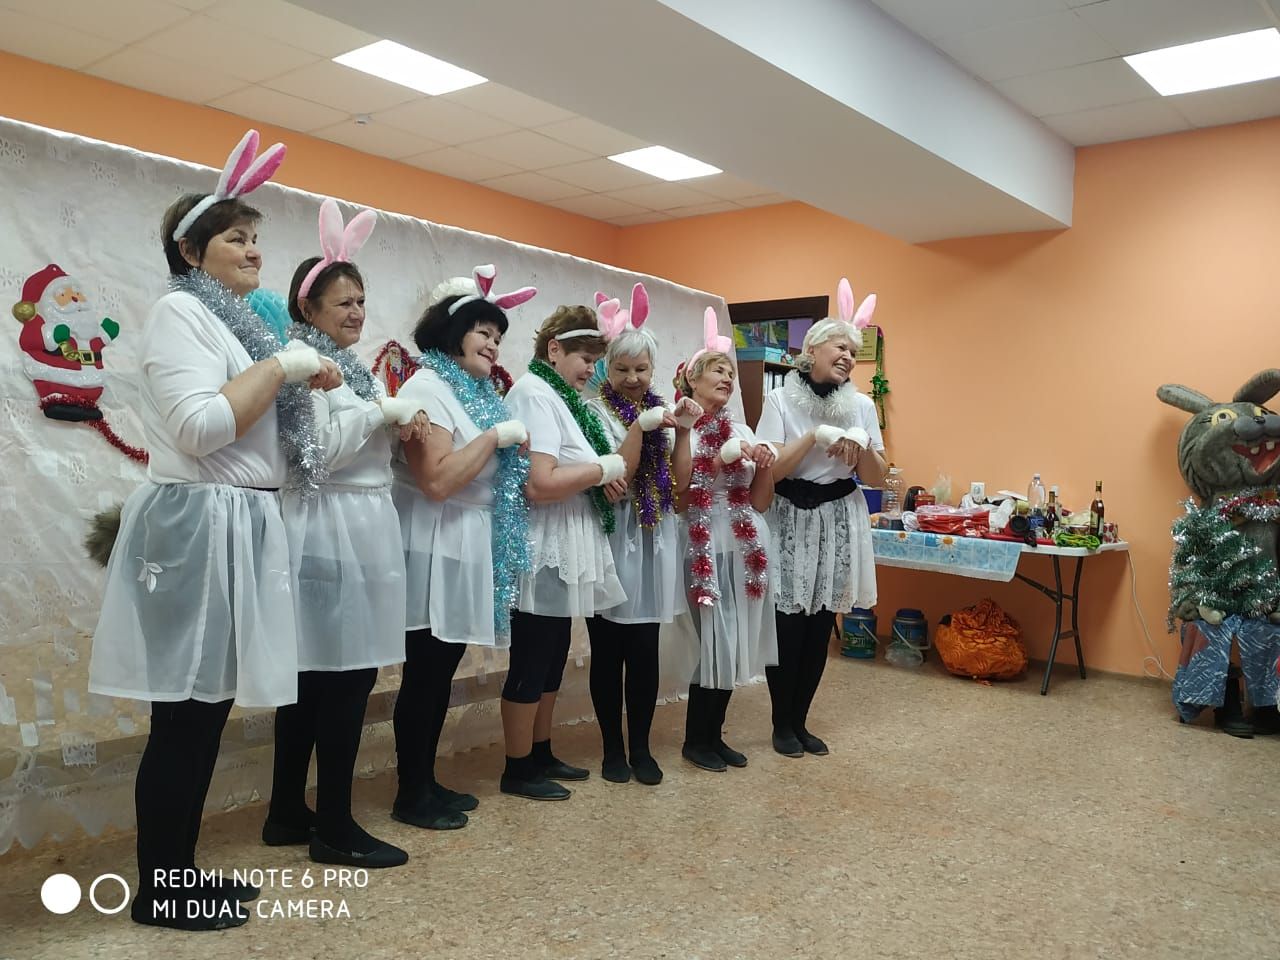 «Вечеринка опытных кроликов» в РДК Лаишева оставила яркие впечатления